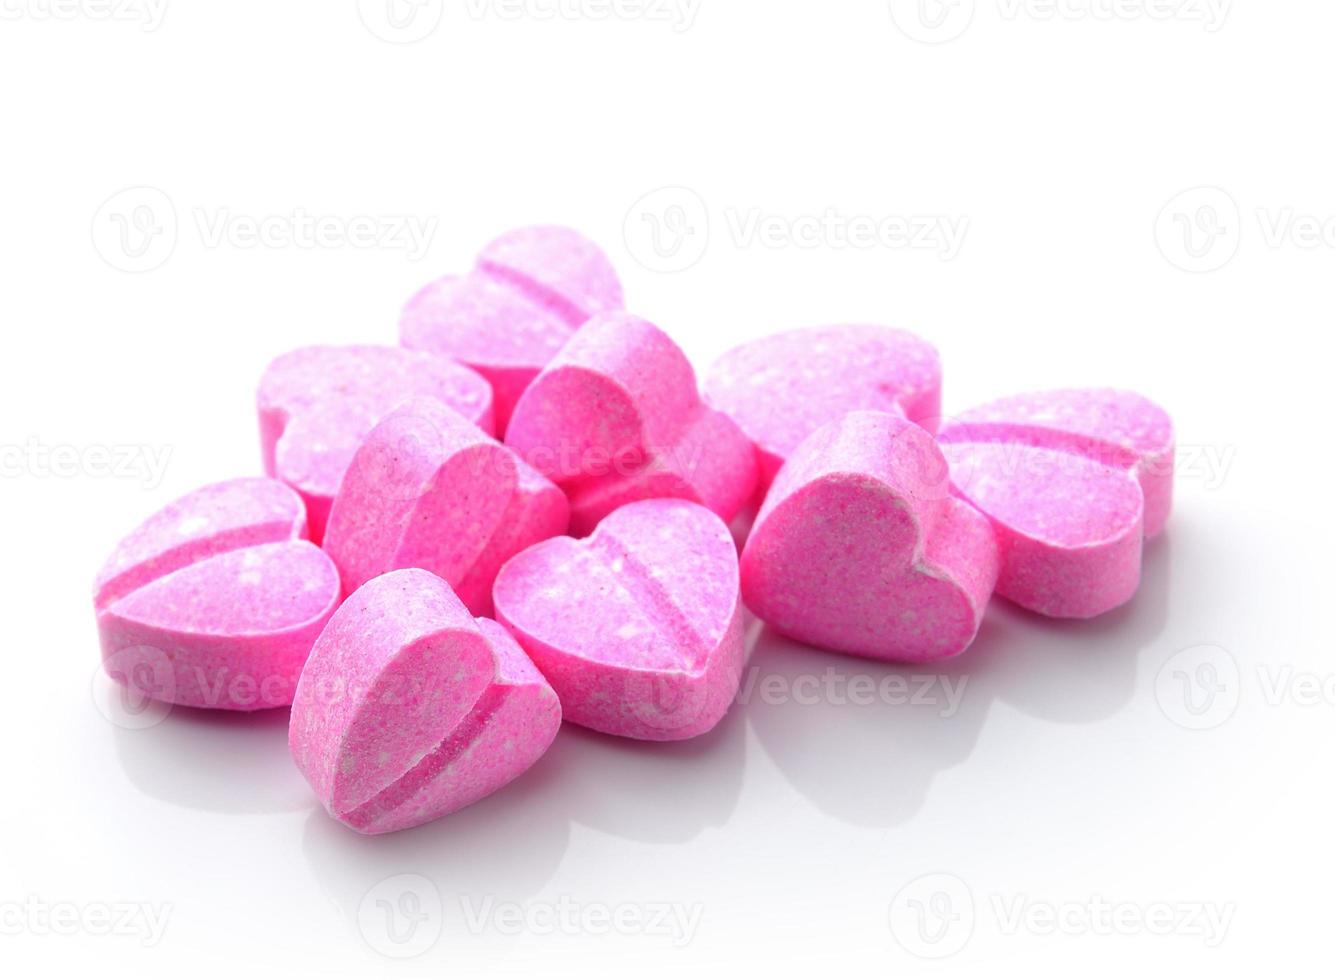 hjärtat av piller isolerad på vit bakgrund foto